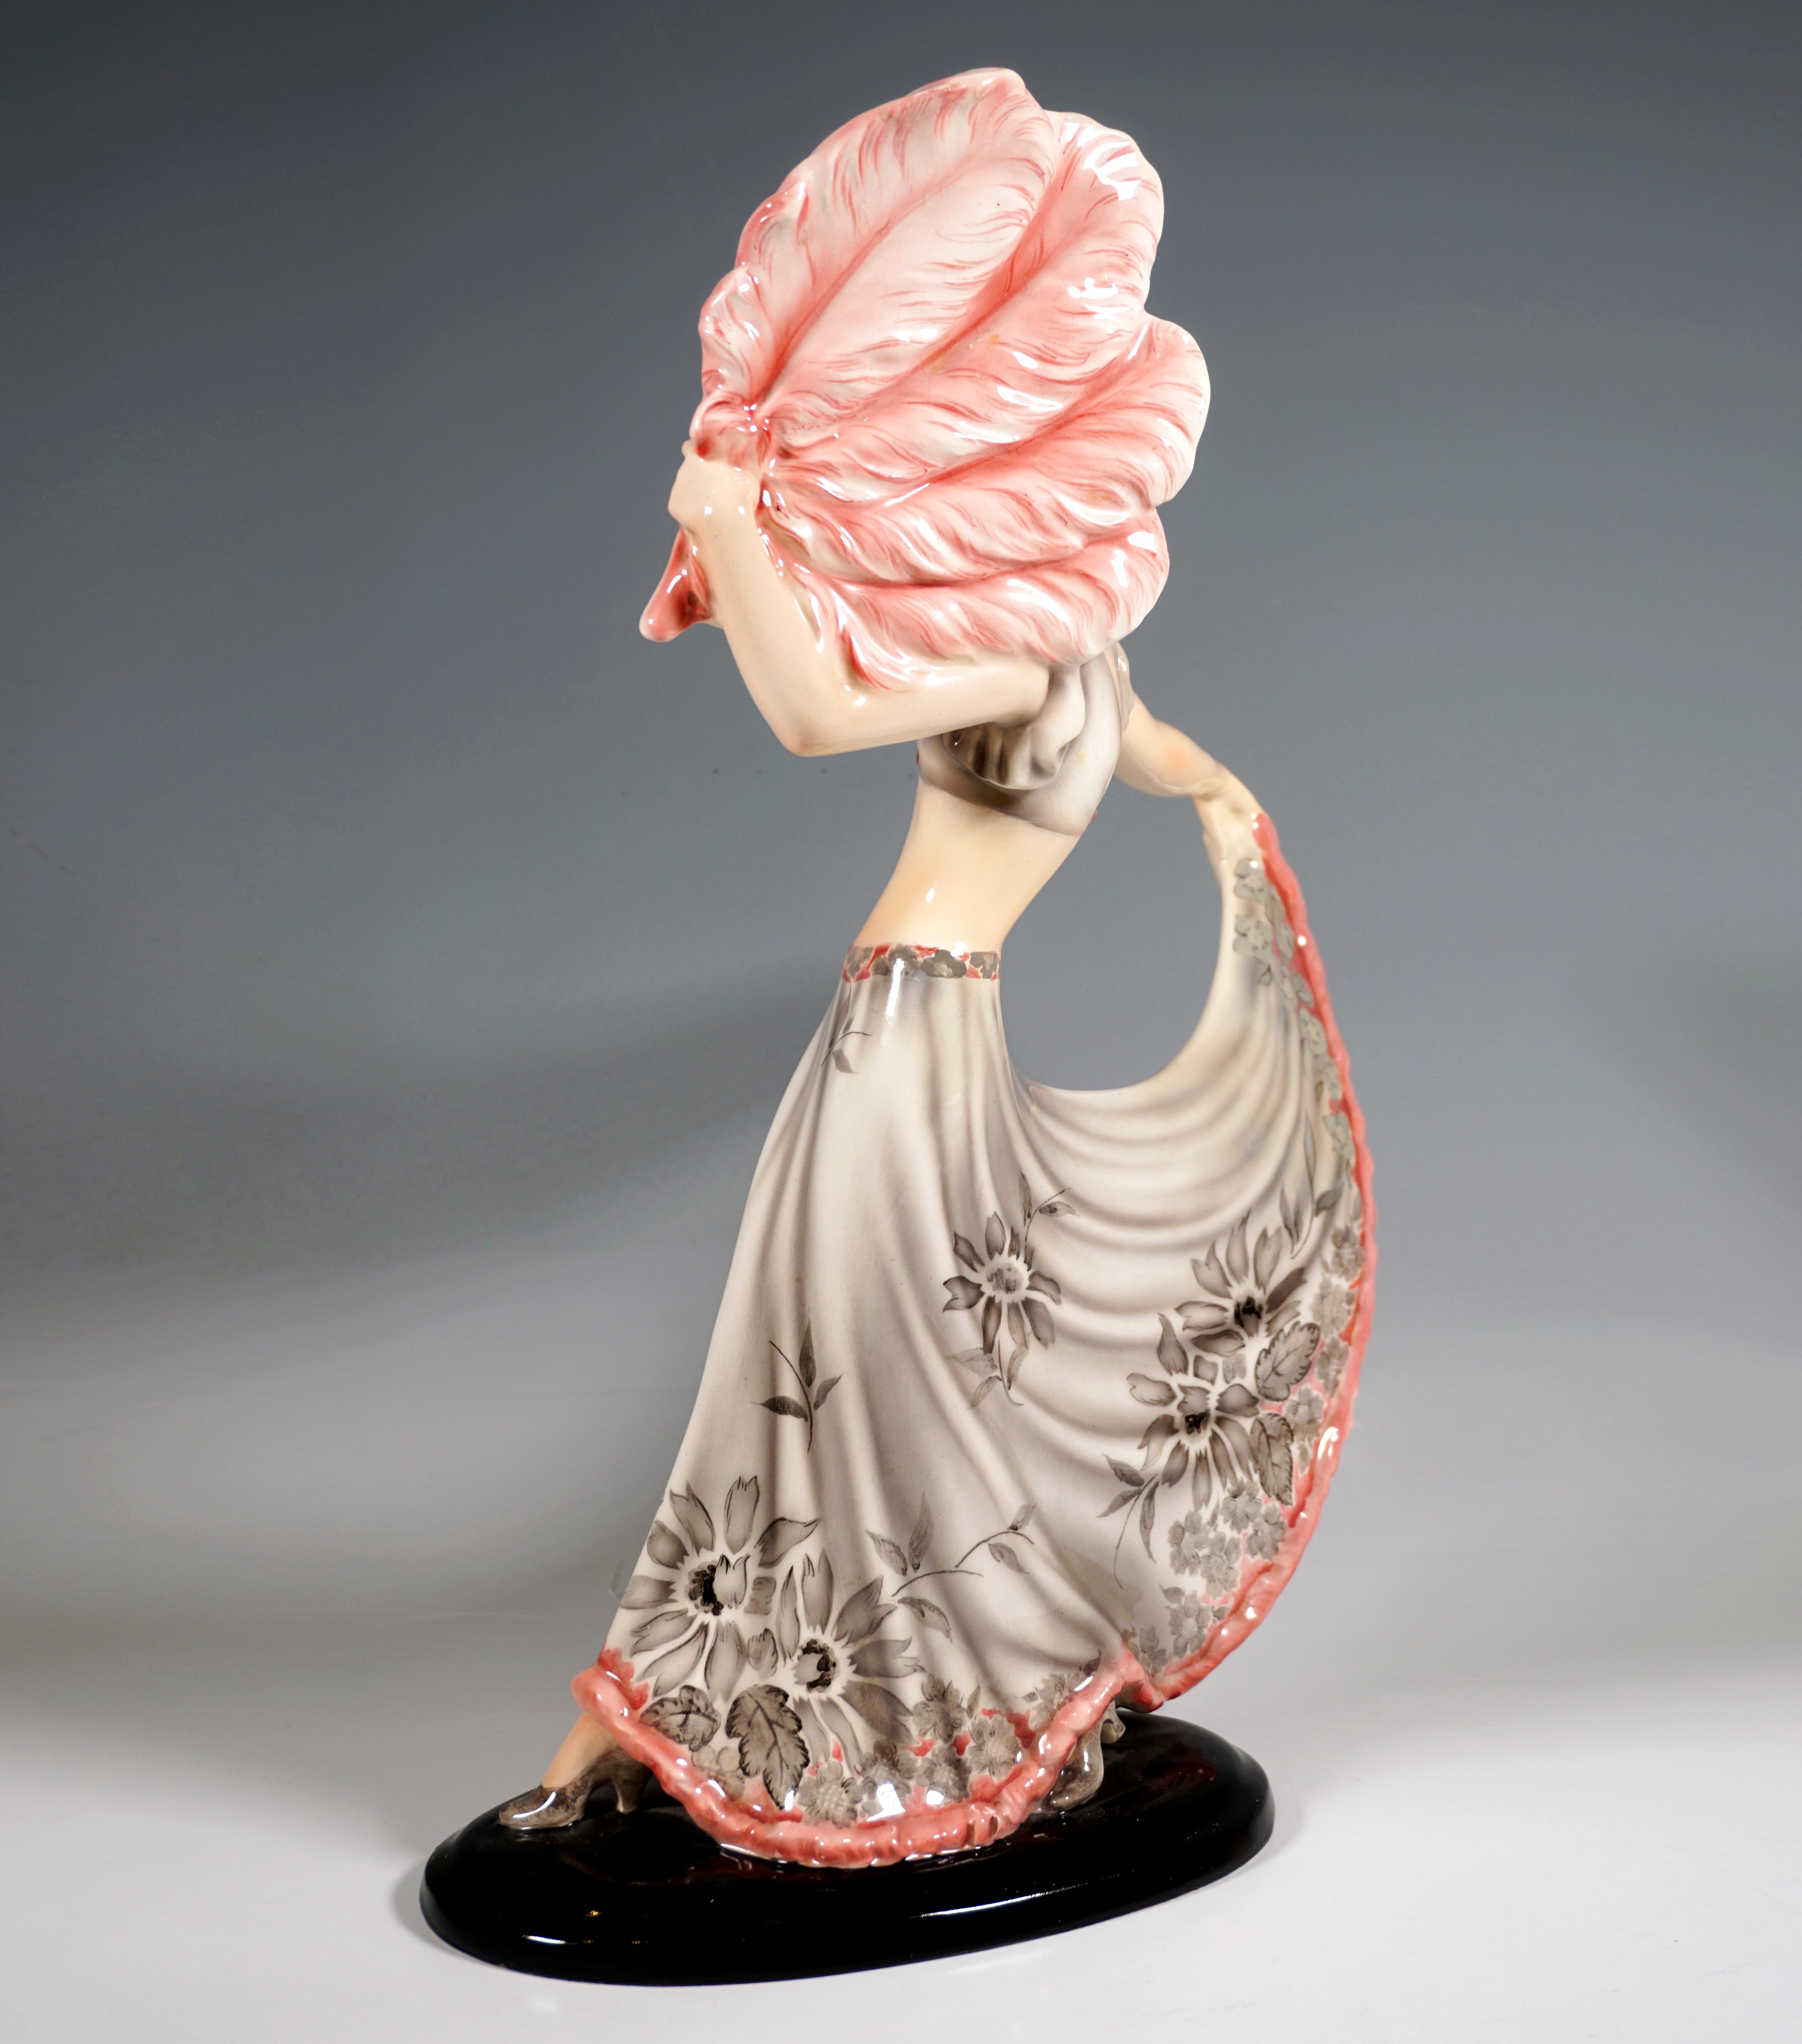 Elegante Goldscheider Art Deco Keramikfigur aus den 1930er Jahren: 
Tänzerin mit schulterlangem Haar in einem langen, weiten, grauen Rock mit Blumendekoration und rosafarbenem Saum und passendem Bustier, nach rechts blickend, das rechte Bein nach